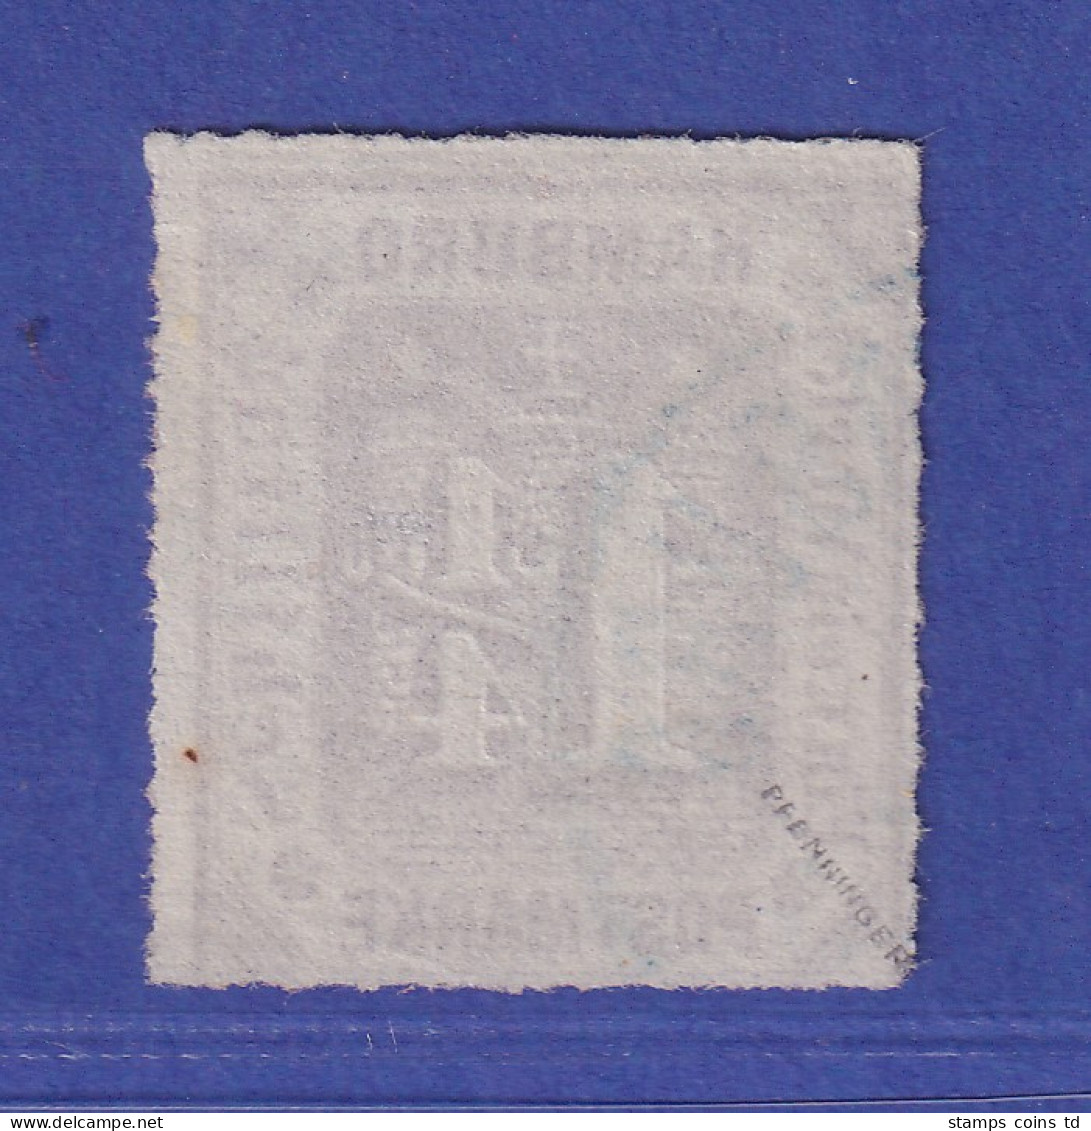 Hamburg 1866 Wertziffer 1 1/4 Schillinge Mi.-Nr. 20 A  O  Gepr. PFENNINGER - Hamburg (Amburgo)